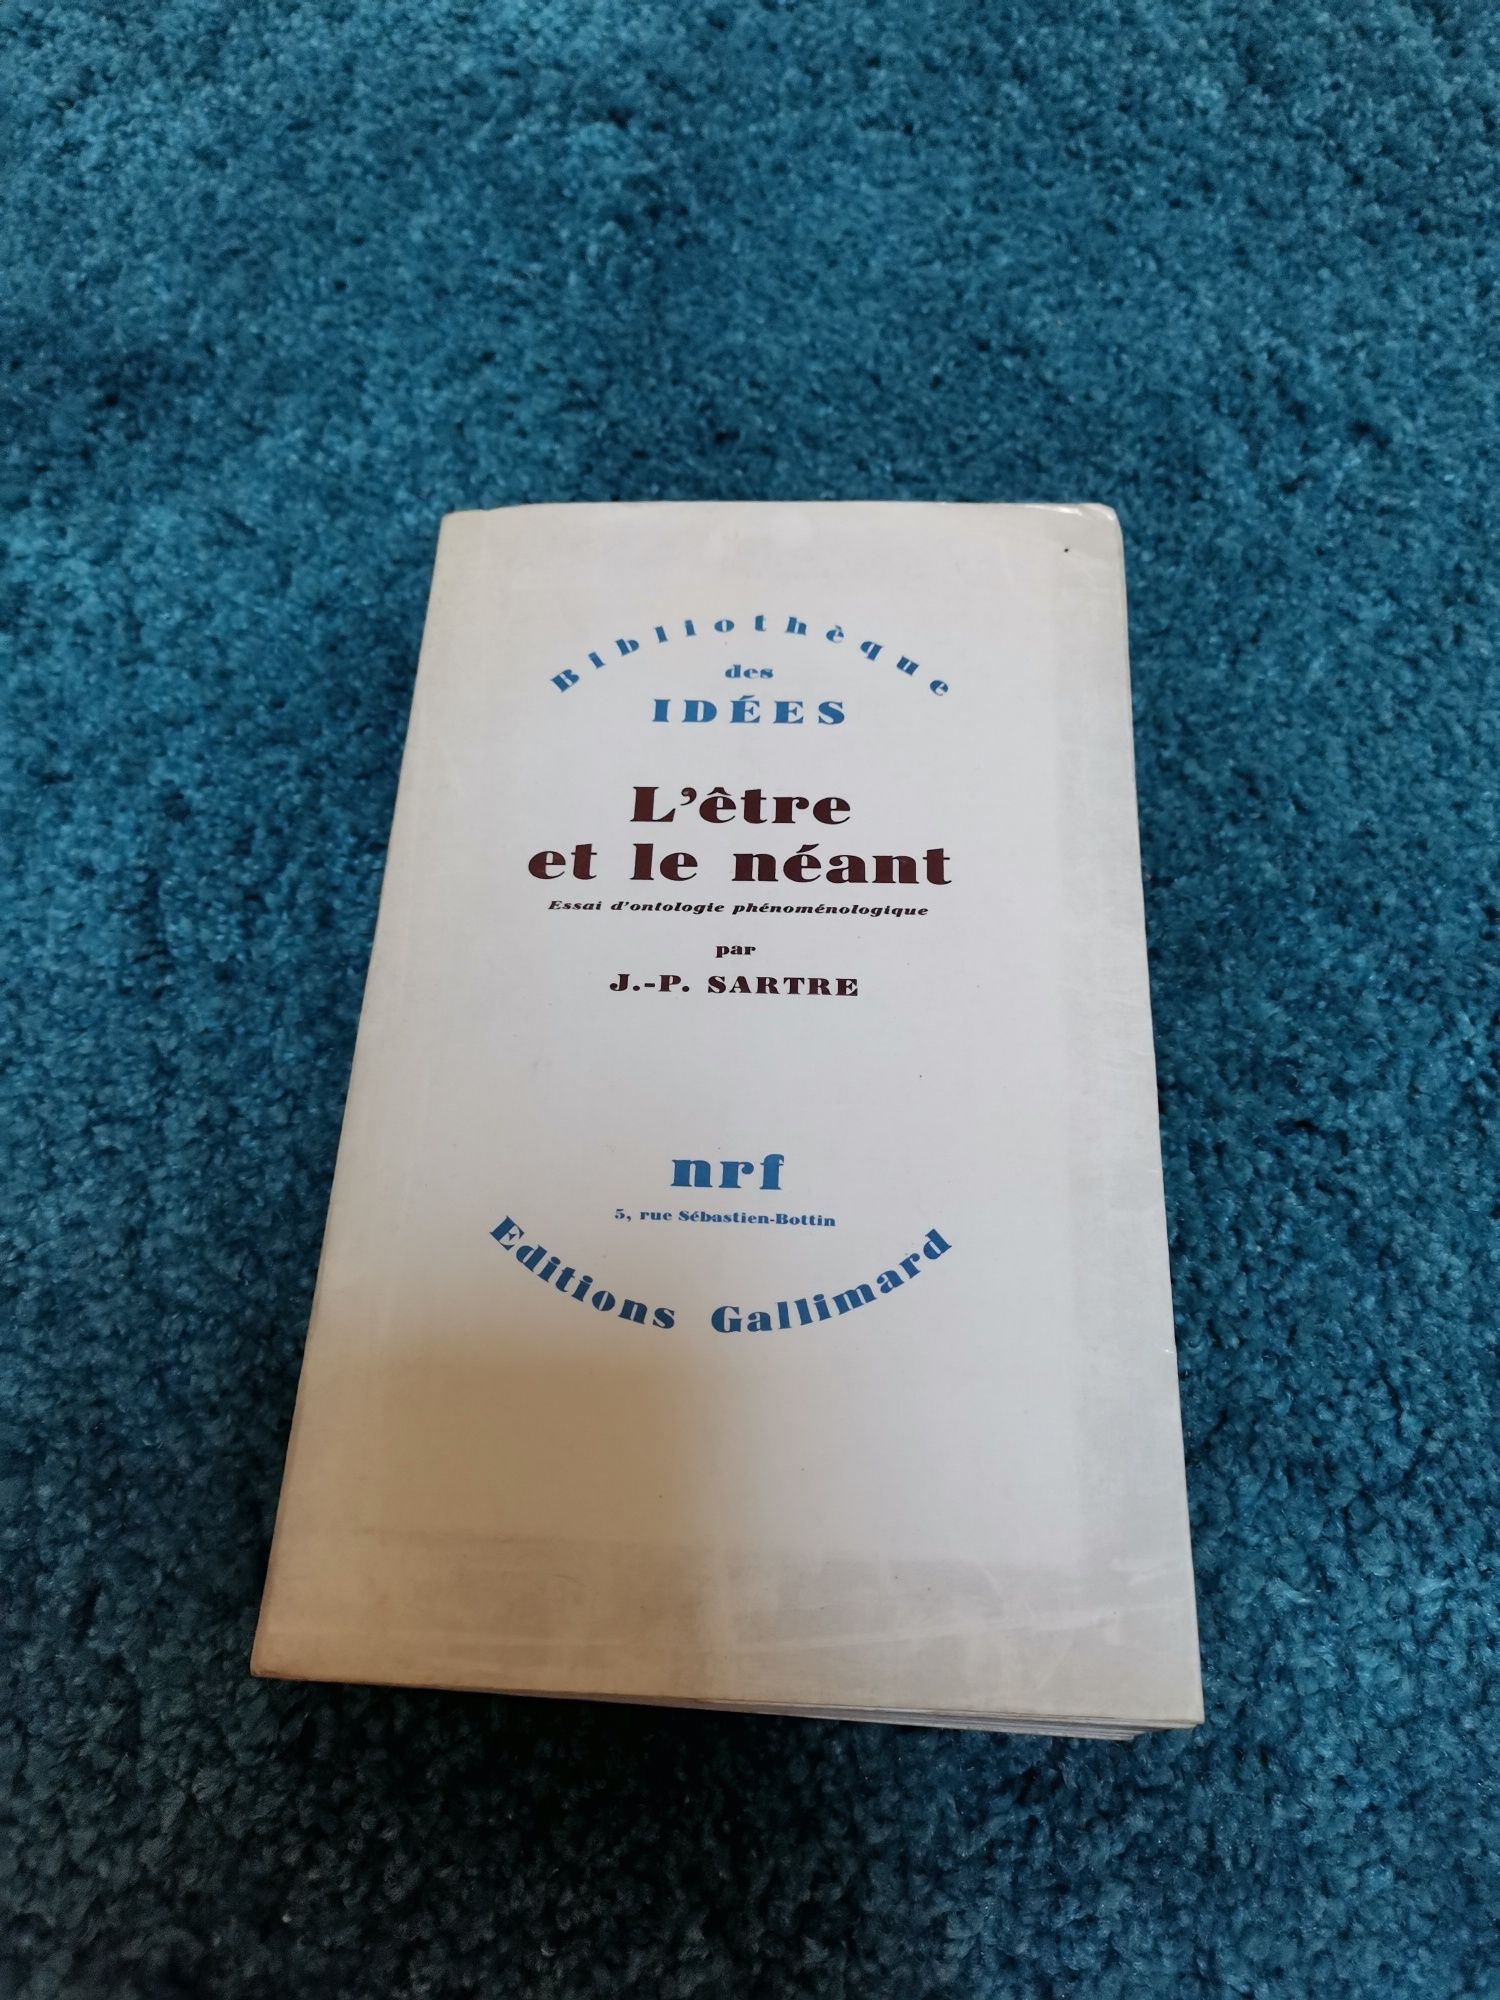 Livro "L'etre Et lê néant"